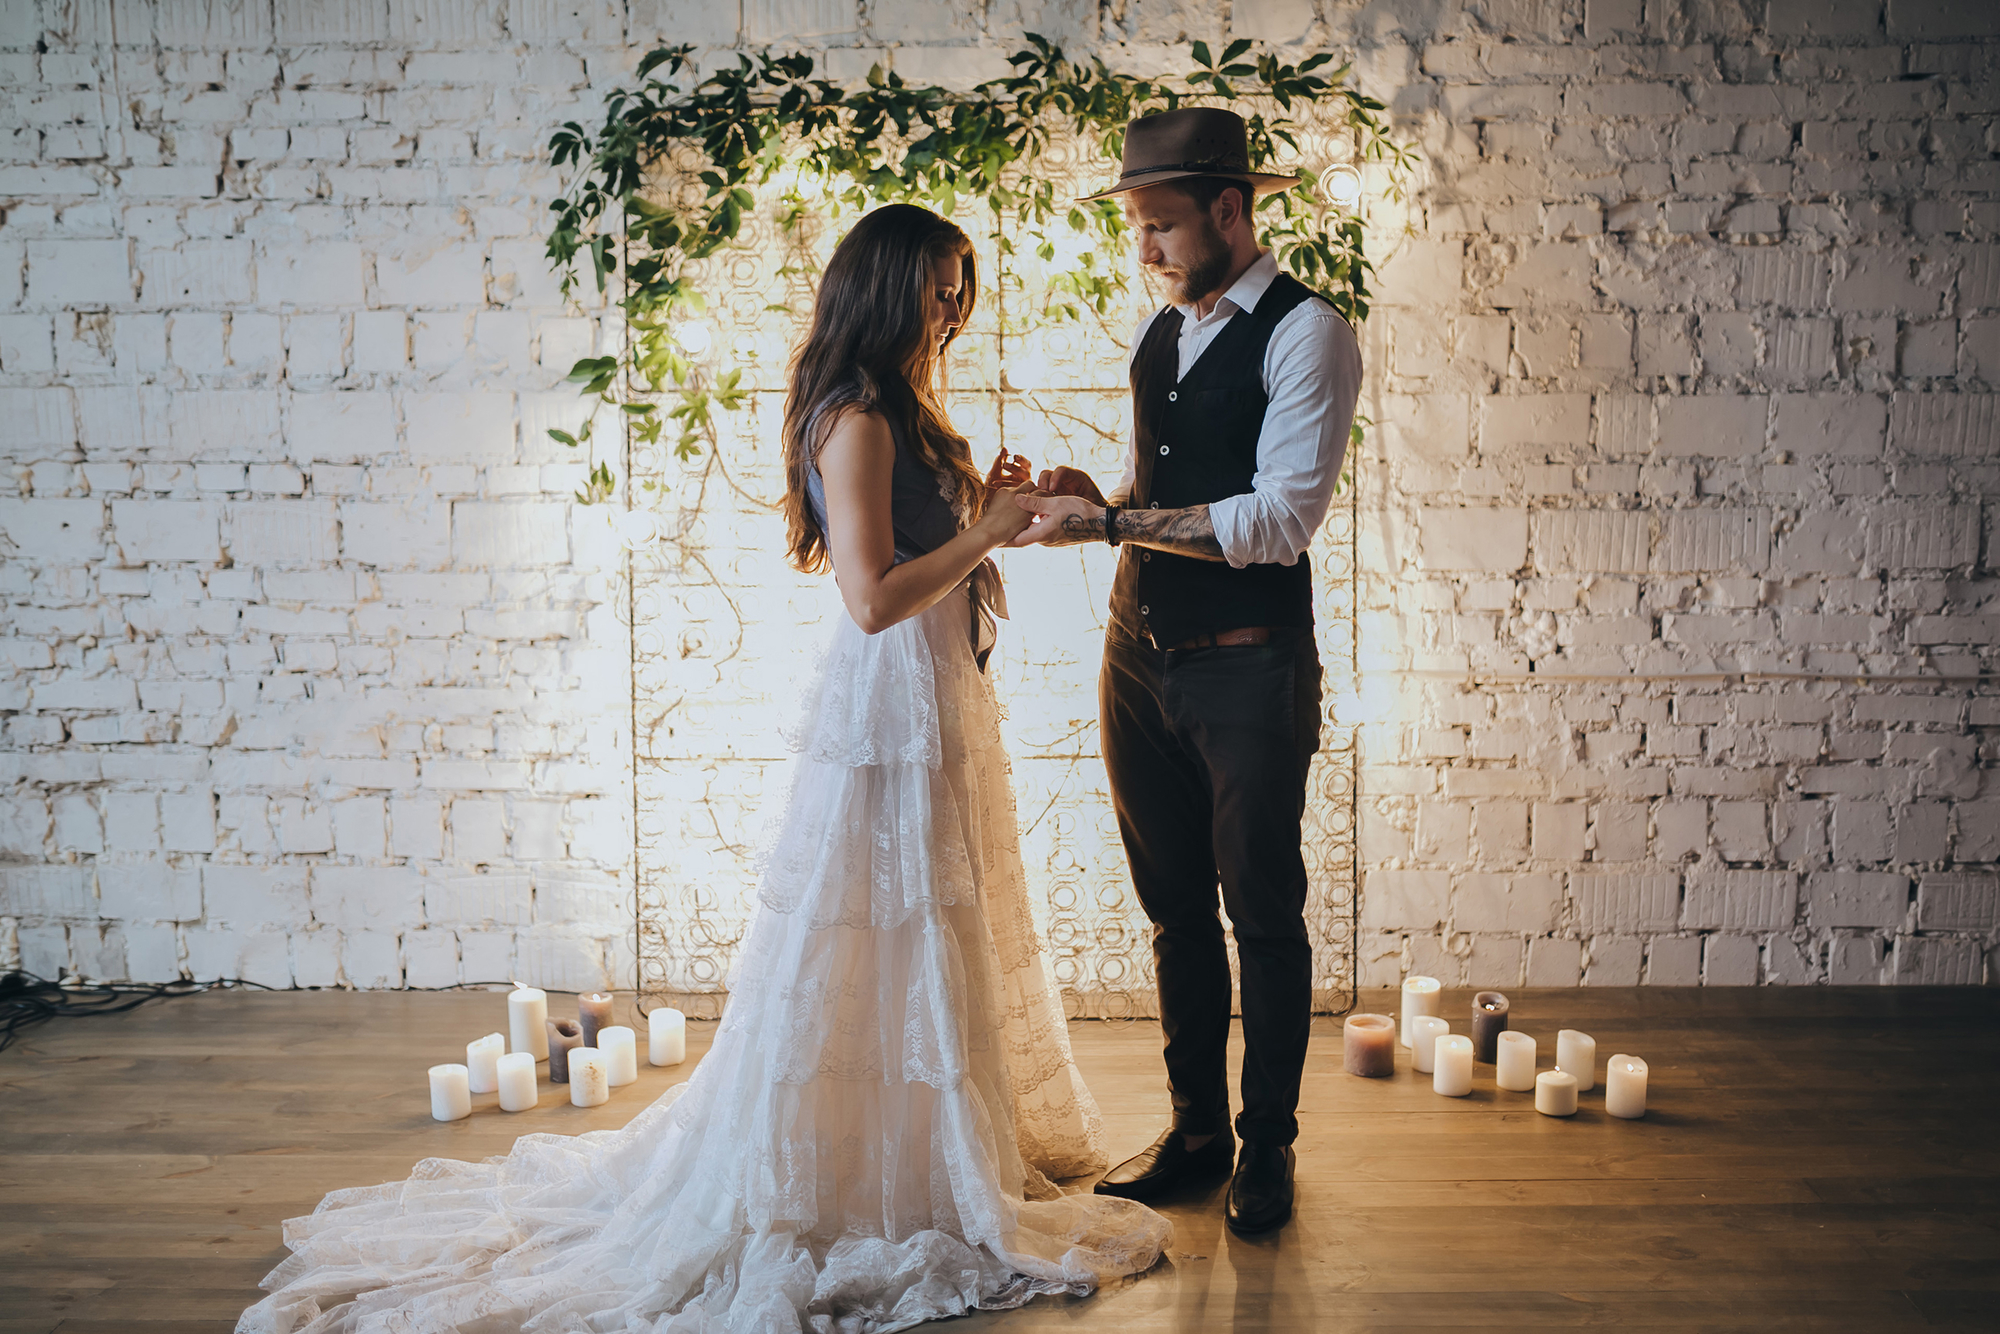 Свадьба-2018 в стиле лофт